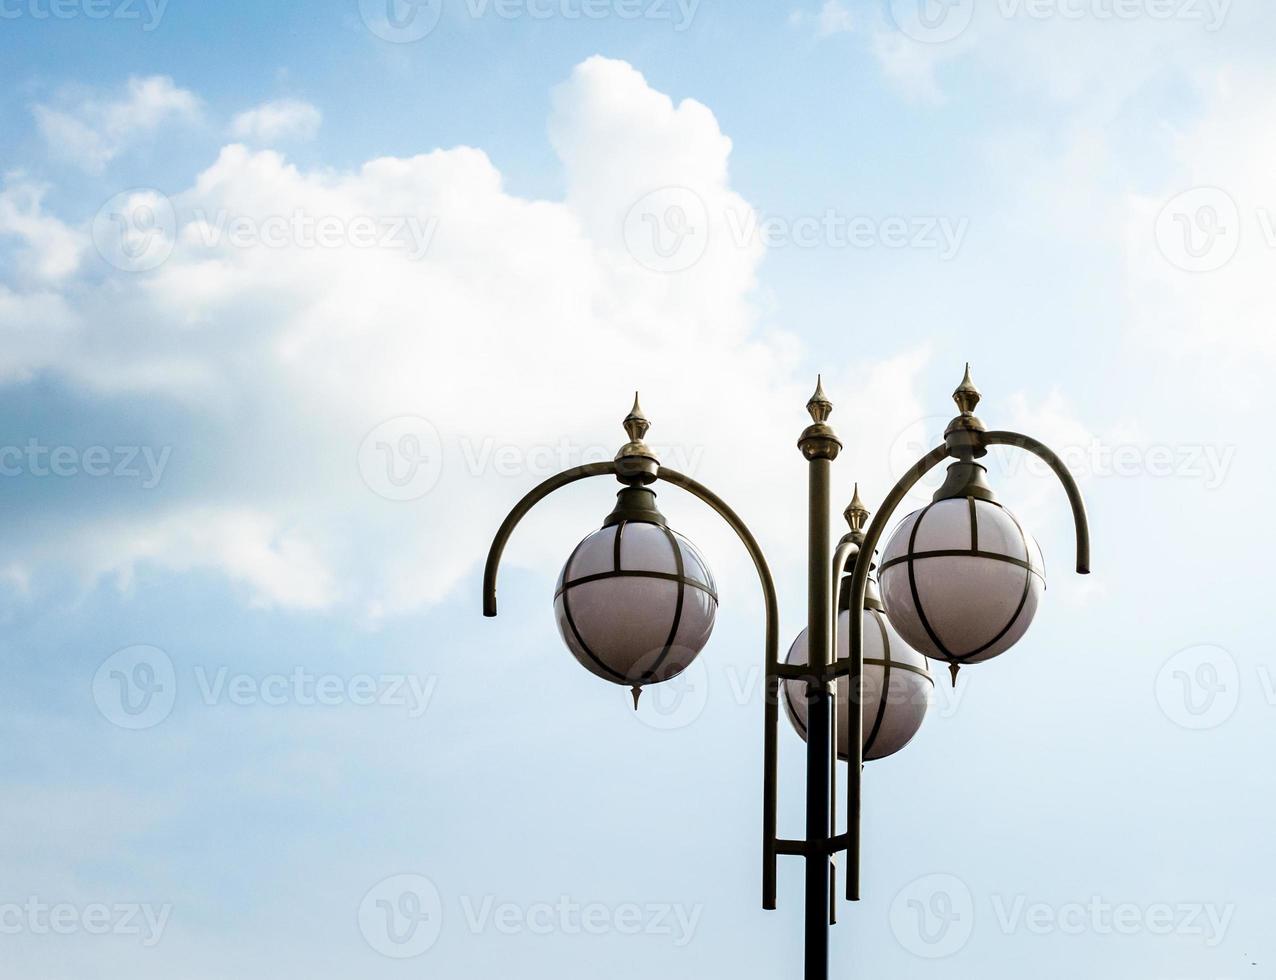 lampione contro un cielo azzurro e nuvole bianche foto